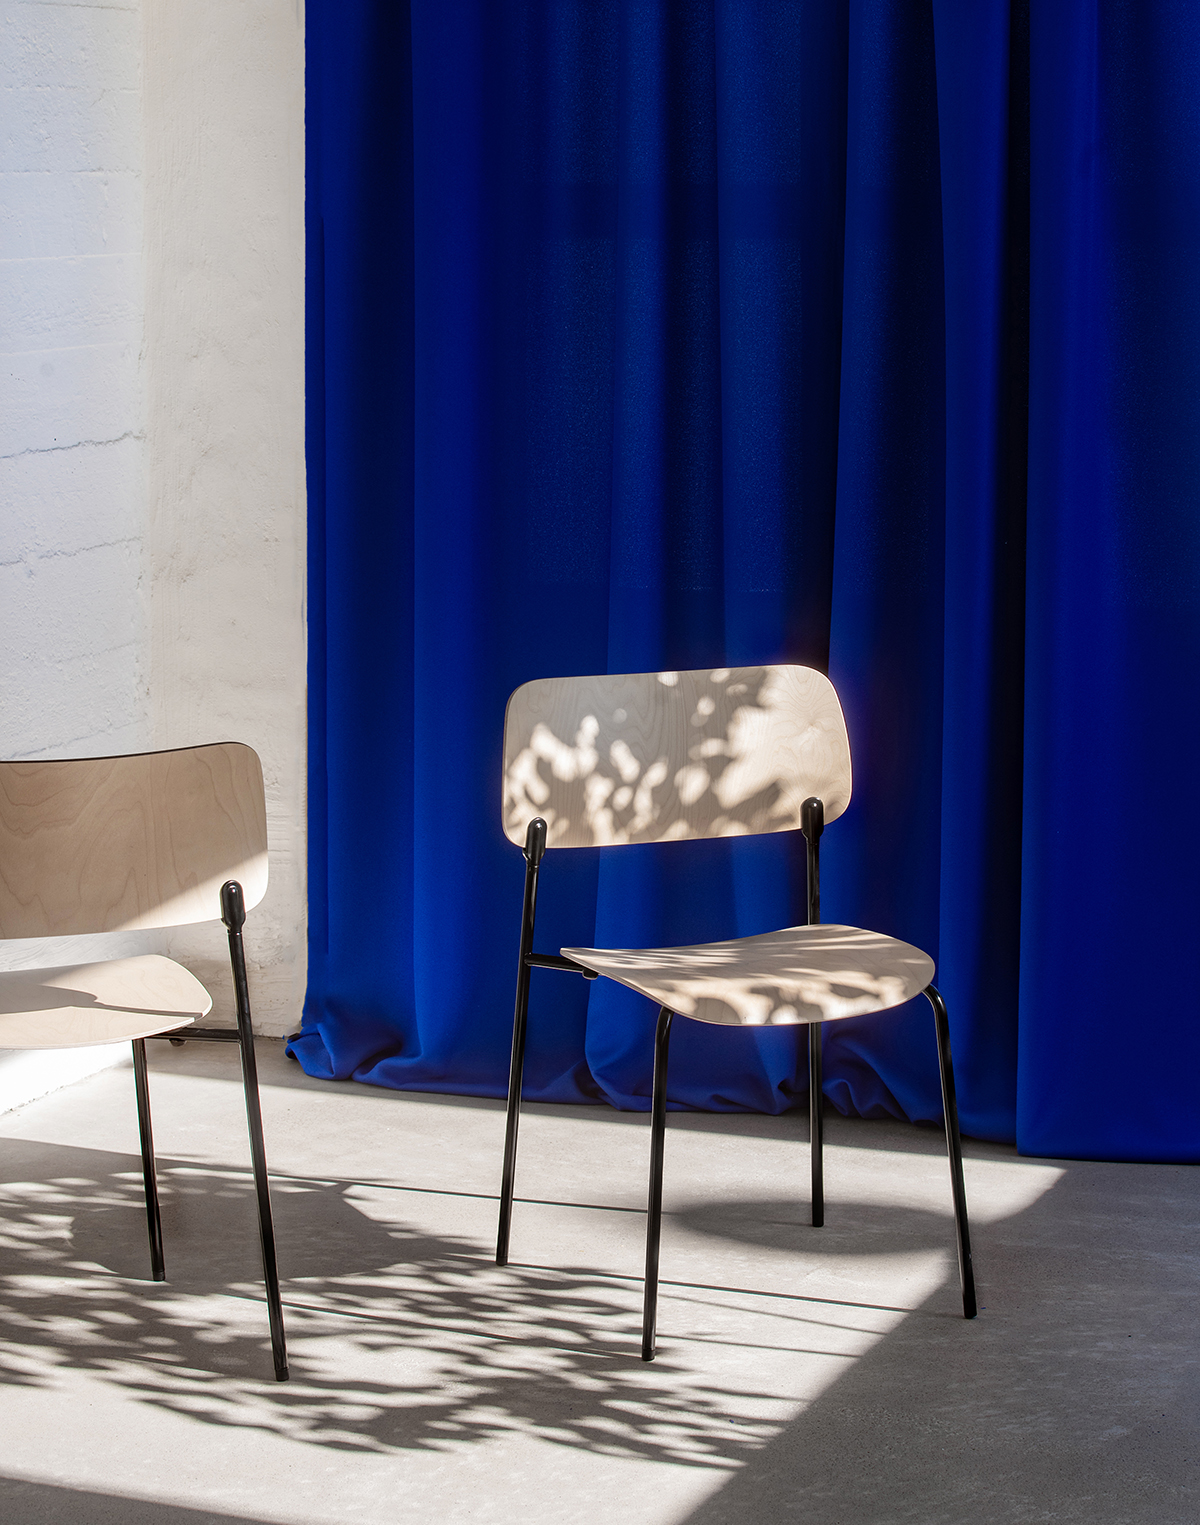 Piiroinen design furniture, Spot chair